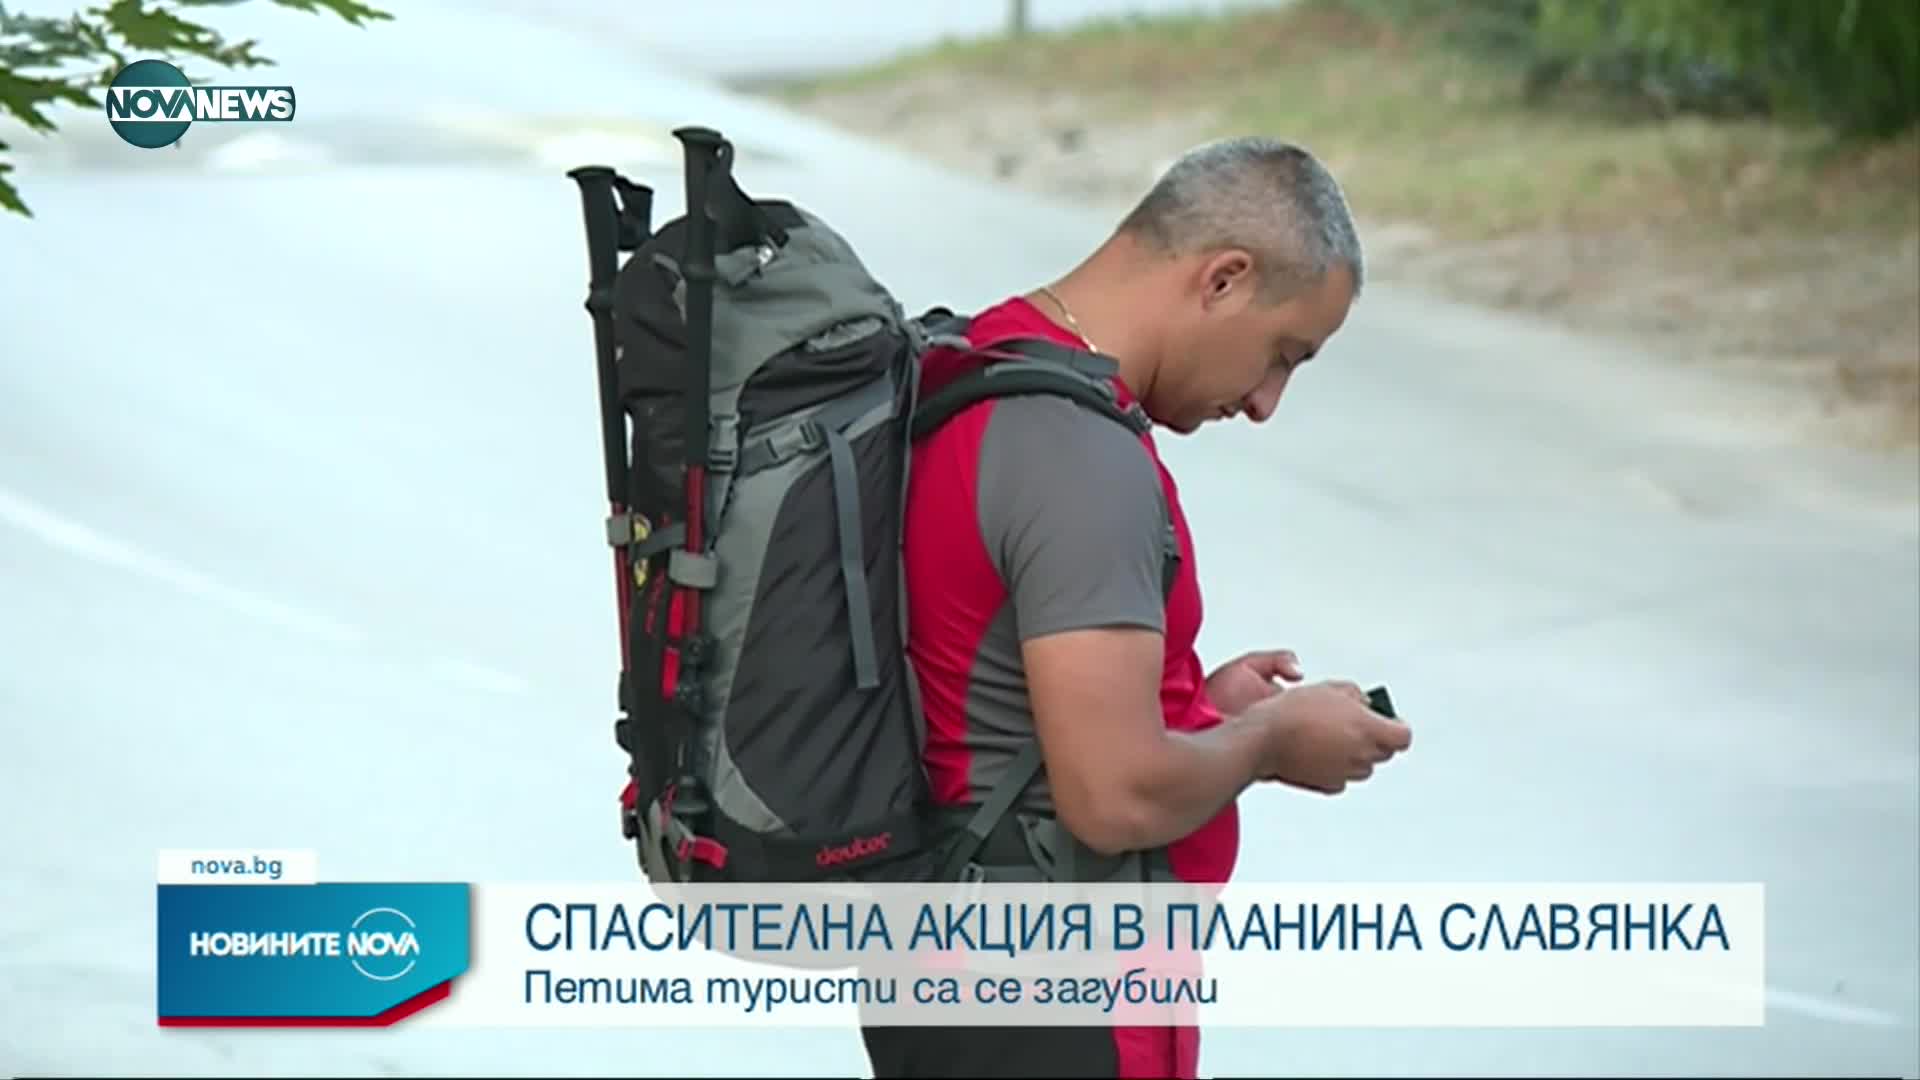 Петима туристи са се загубили в Славянка край Царев връх